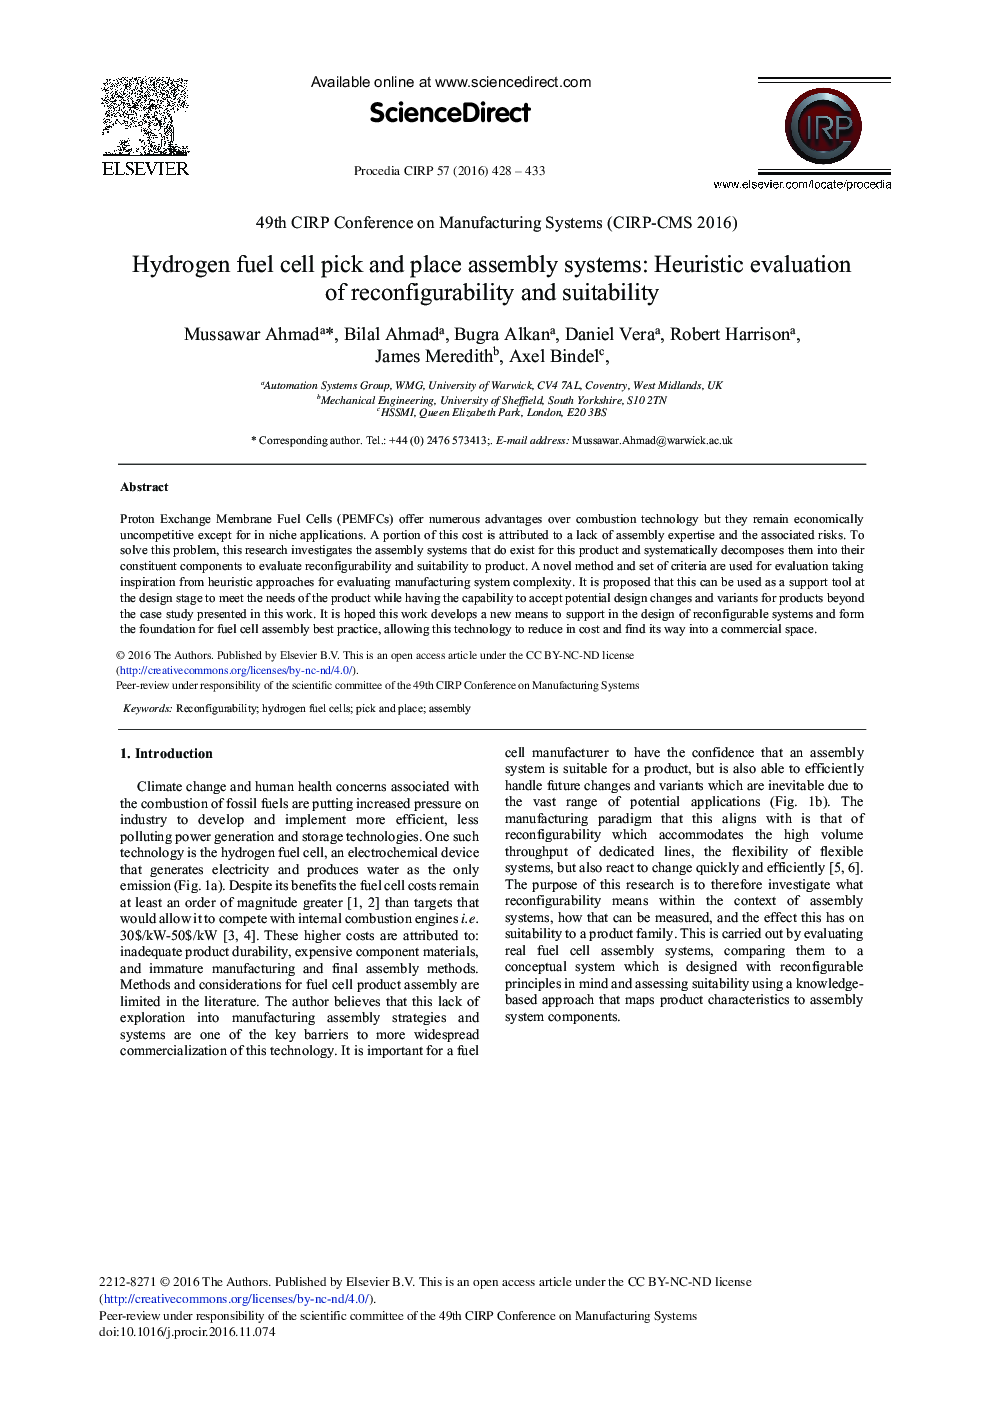 سیستم های جمع آوری و جمع آوری سلول های سوخت هیدروژن: ارزیابی اکتشافی سازگاری و مناسب بودن 